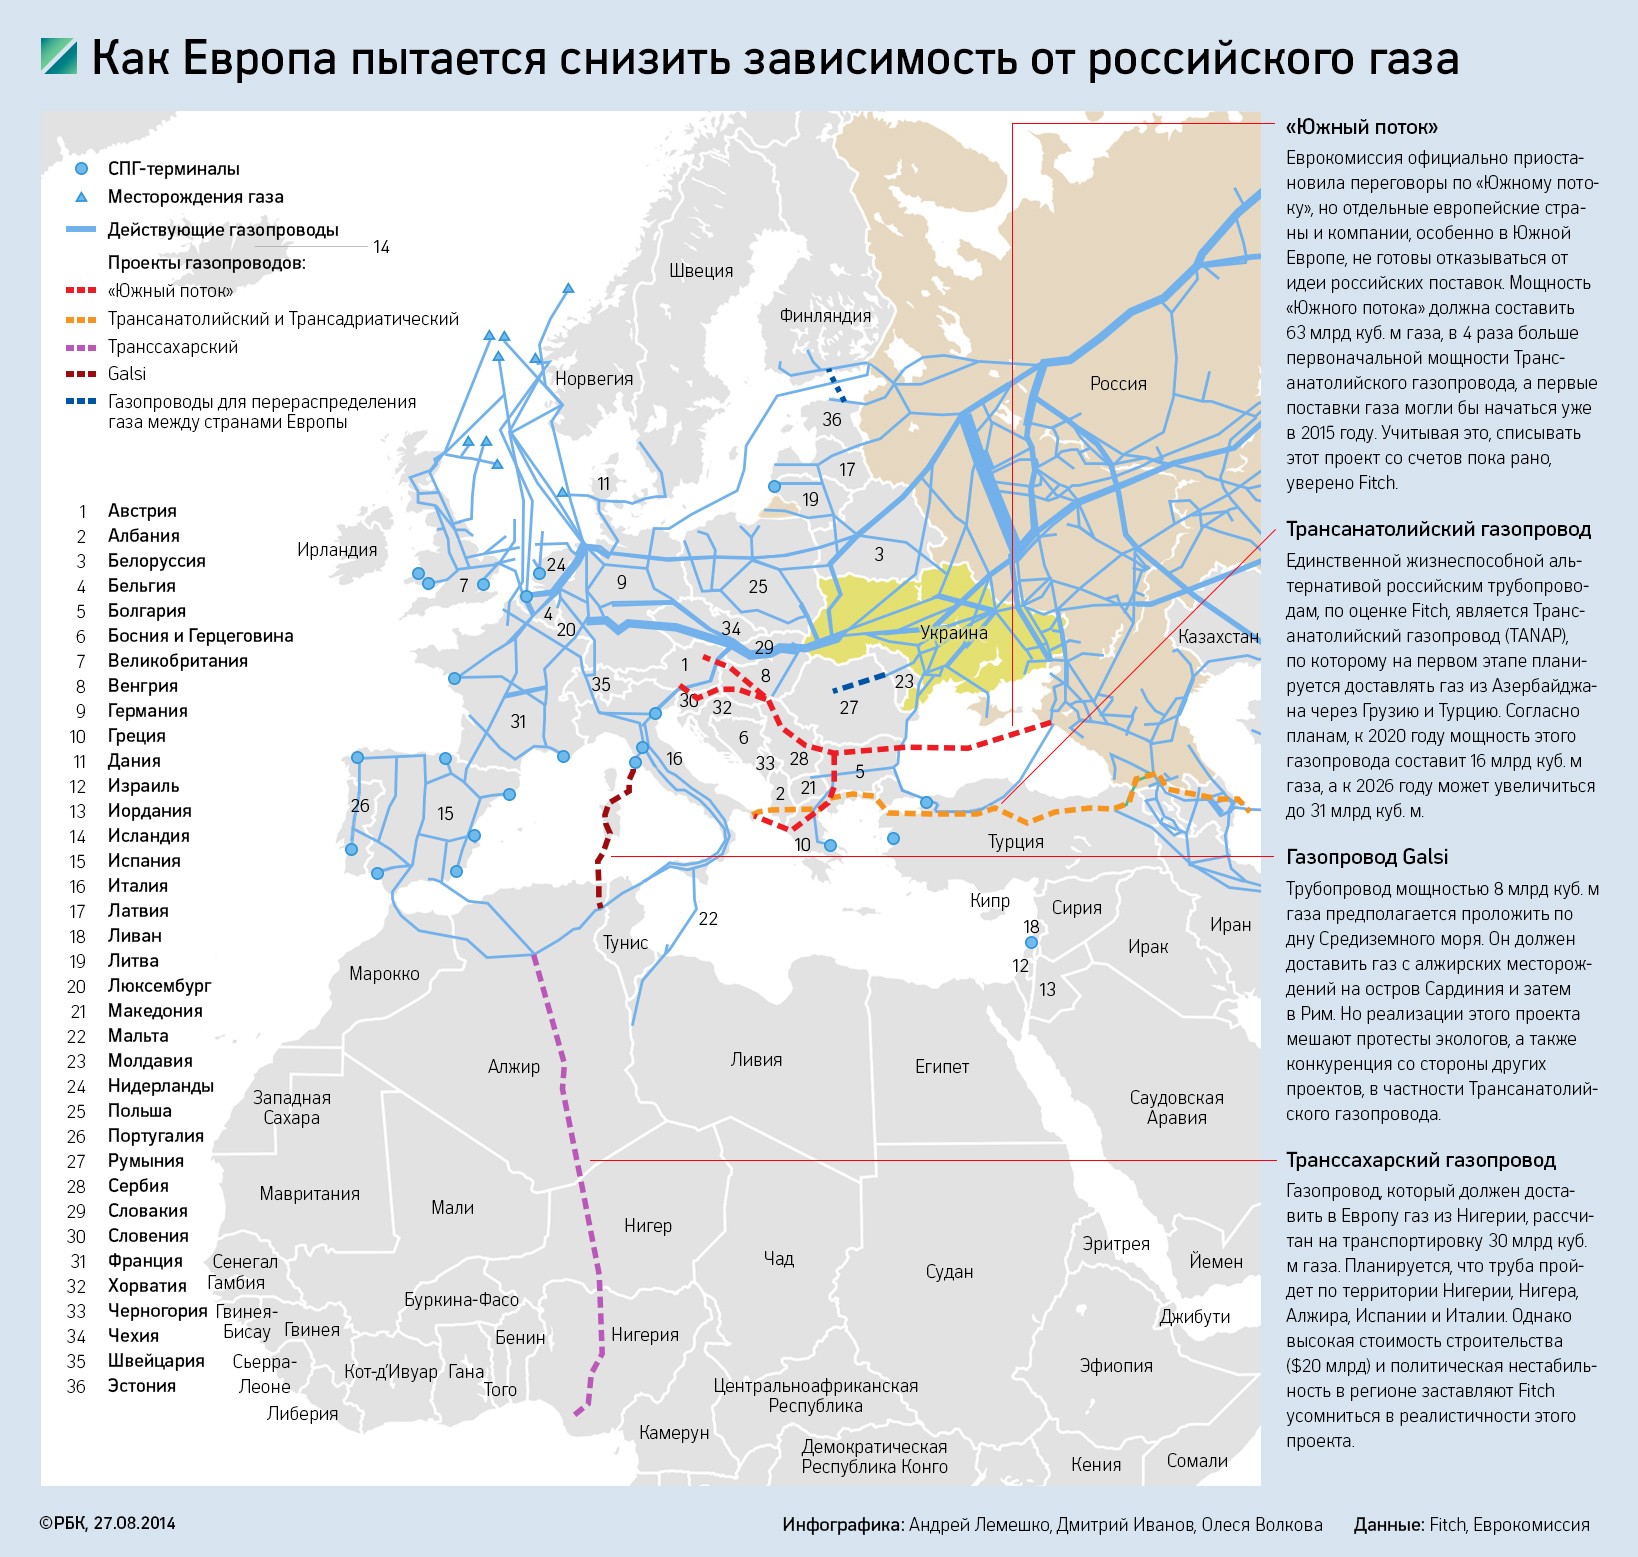 Как Европа избавляется от зависимости от российского газа. Инфографика 